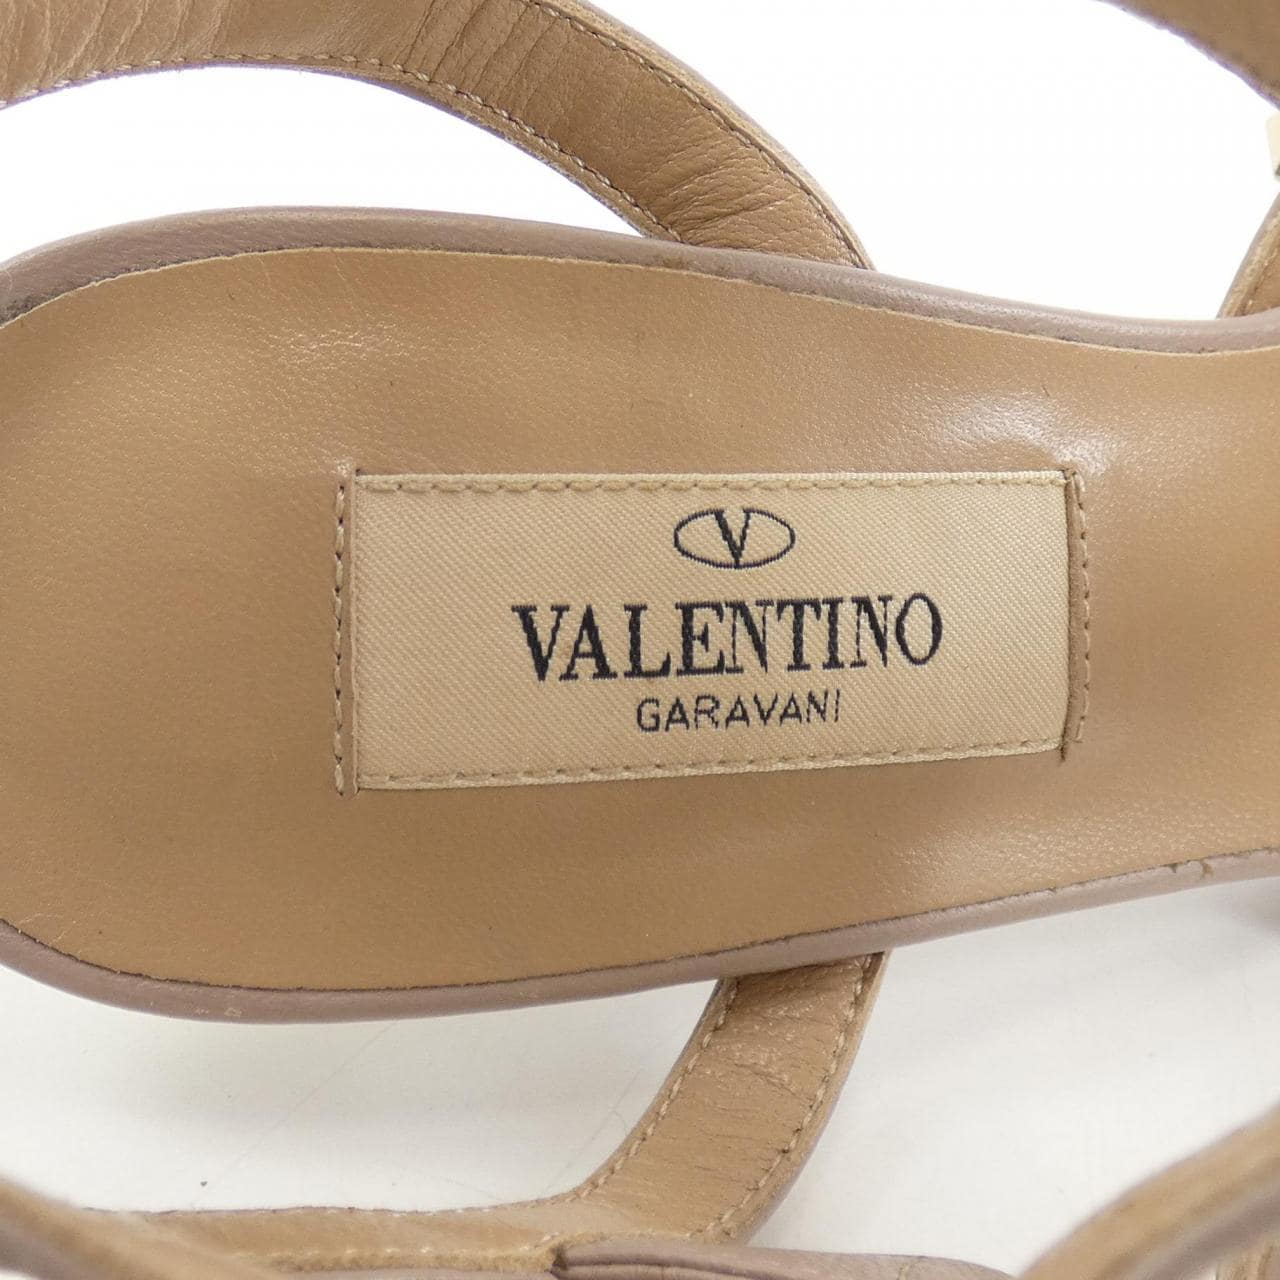 瓦伦蒂诺· VALENTINO GARAVANI鞋履